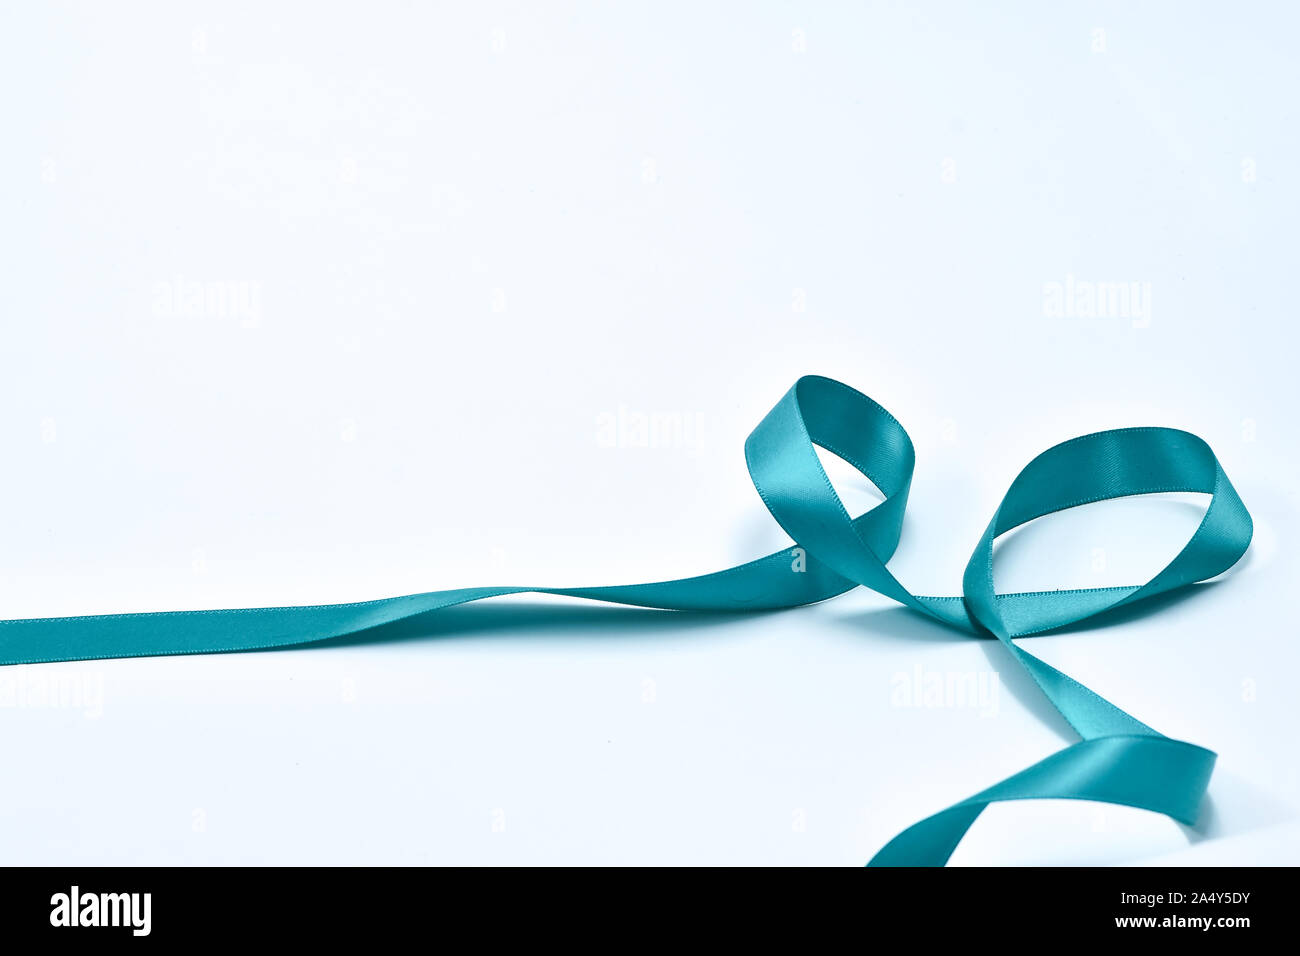 Aquamarine curly ribbon on white background, decorative elements Stock Photo